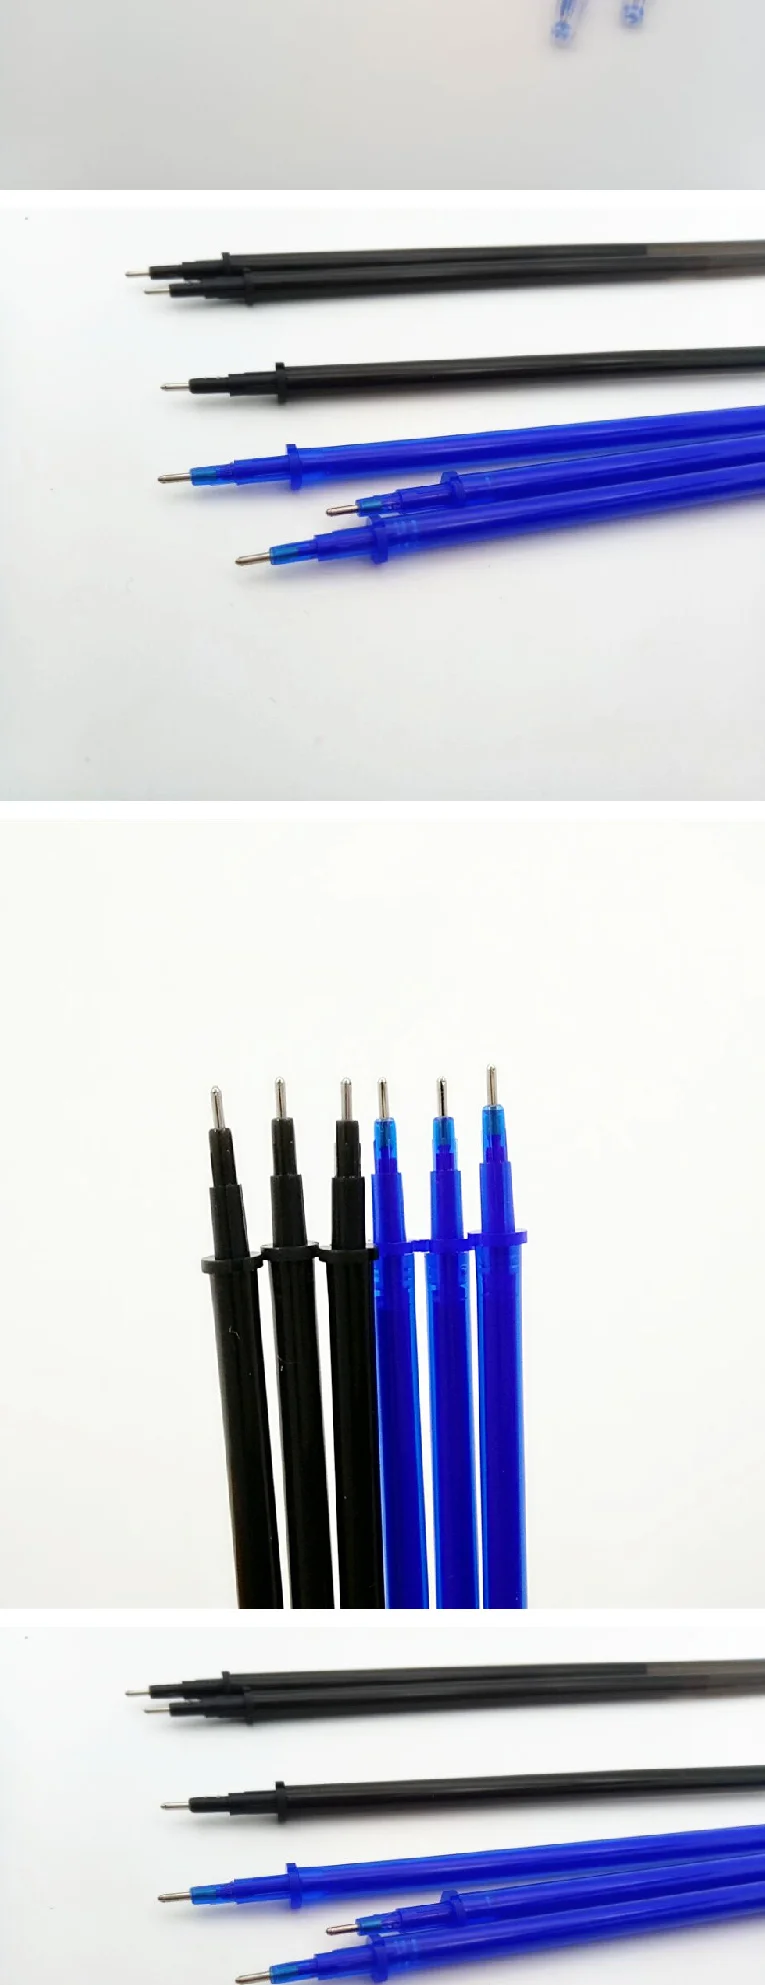 10 шт./лот 0,5 мм стираемые ручки заправки для ручек цвет синий и черный пополняющие чернила подпись в офисе стержни школьные офисные принадлежности